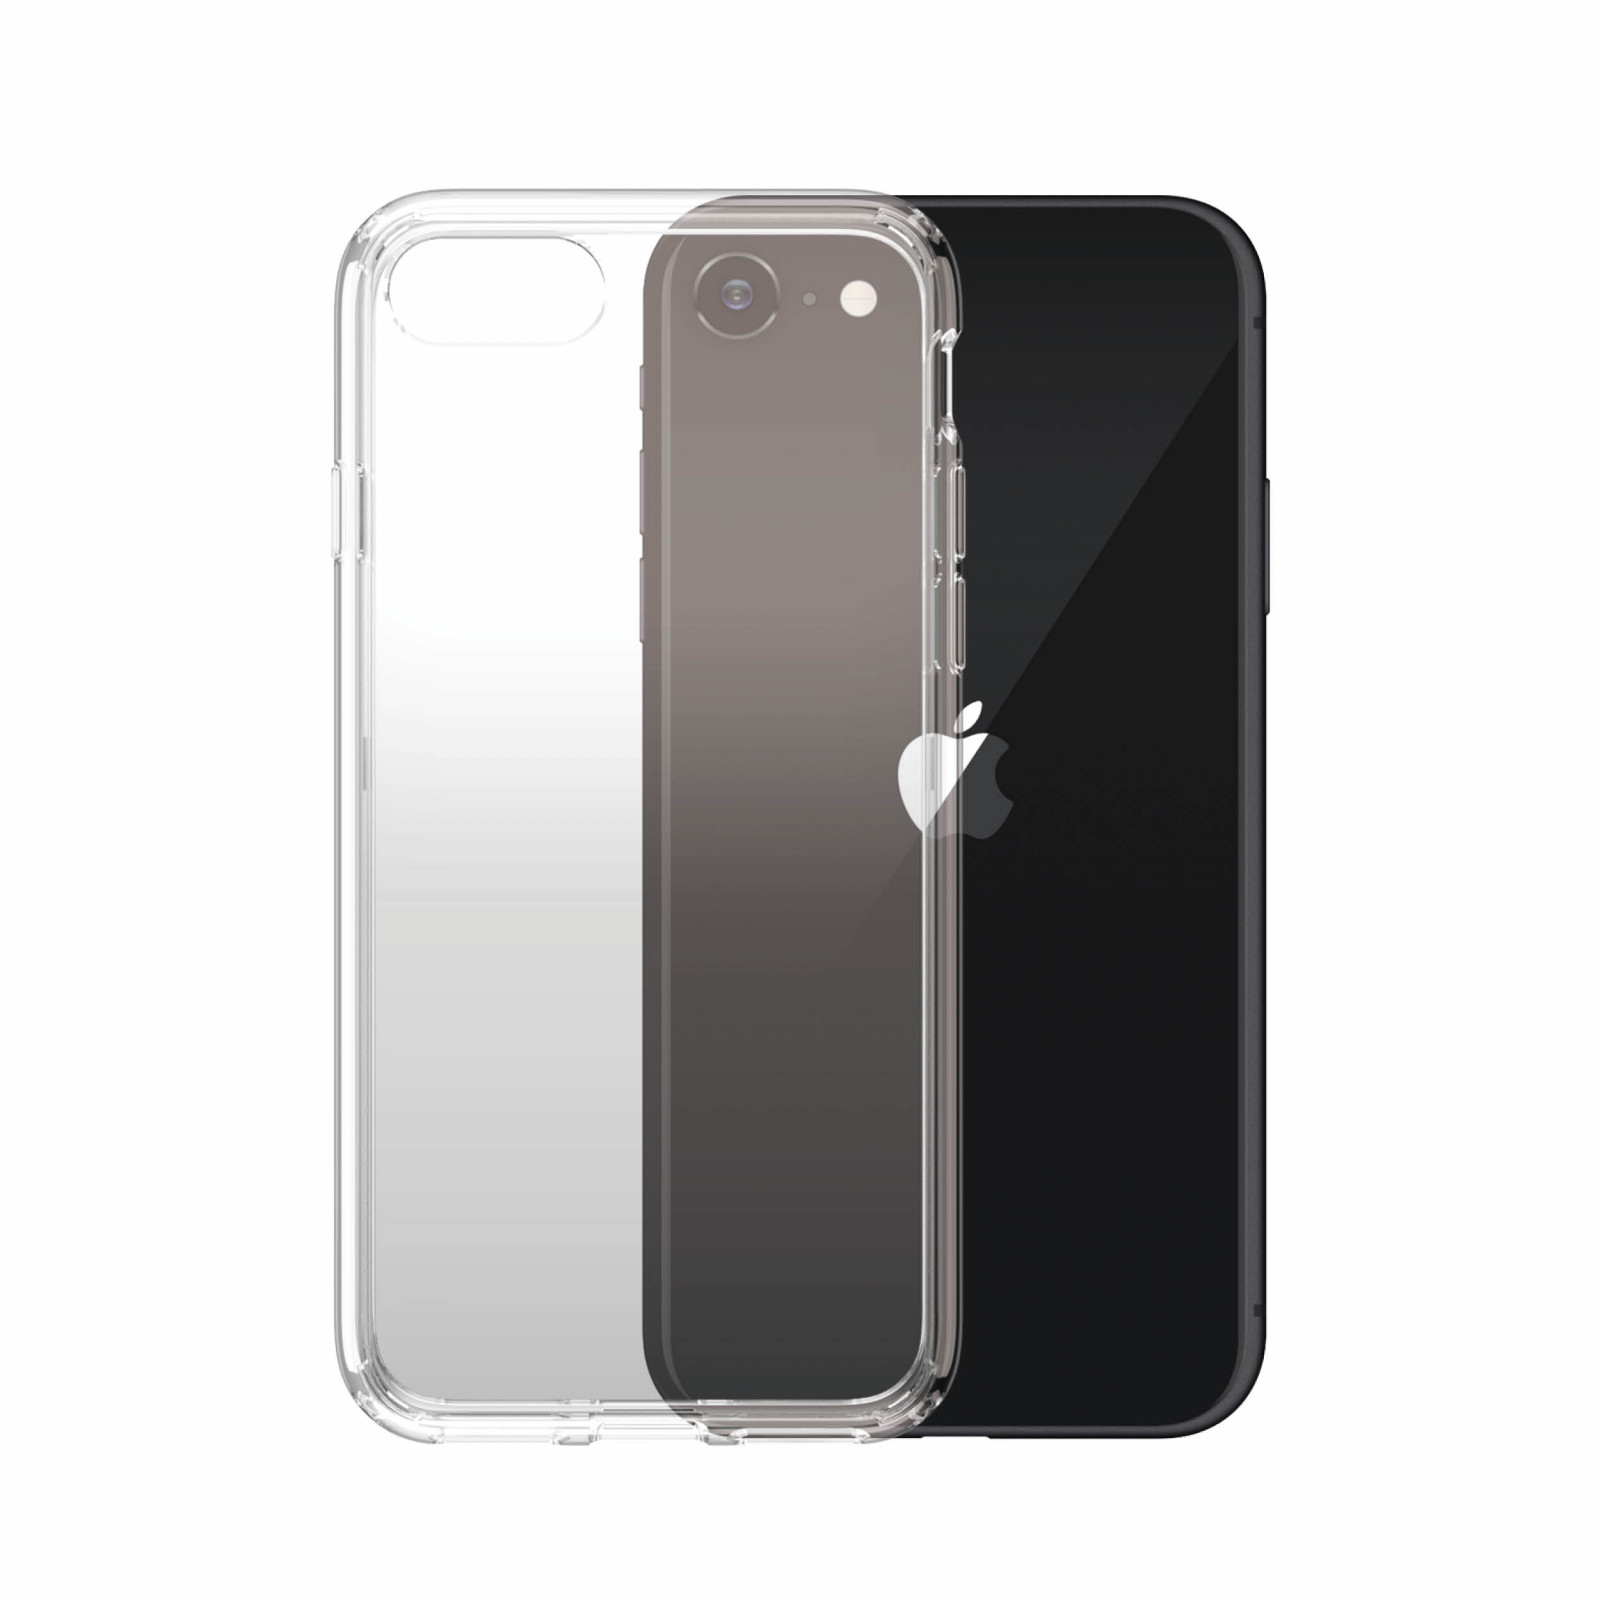 Гръб PanzerGlass Hard Case за iPhone 7/8/SE 2020/2022, прозрачен